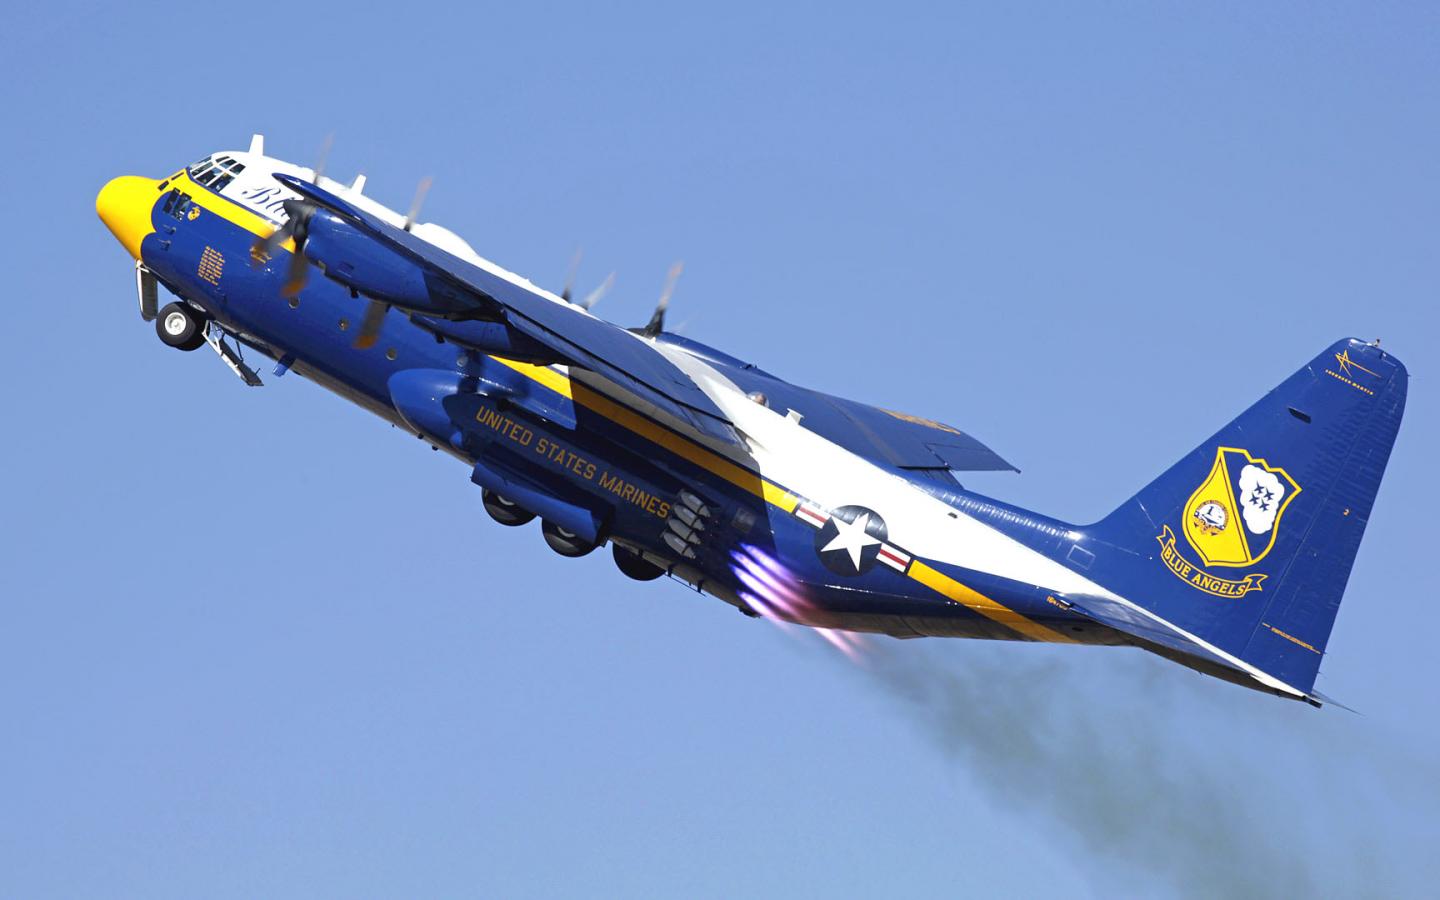 Aircraft c 130 hercules blue angels fat albert #QVdk